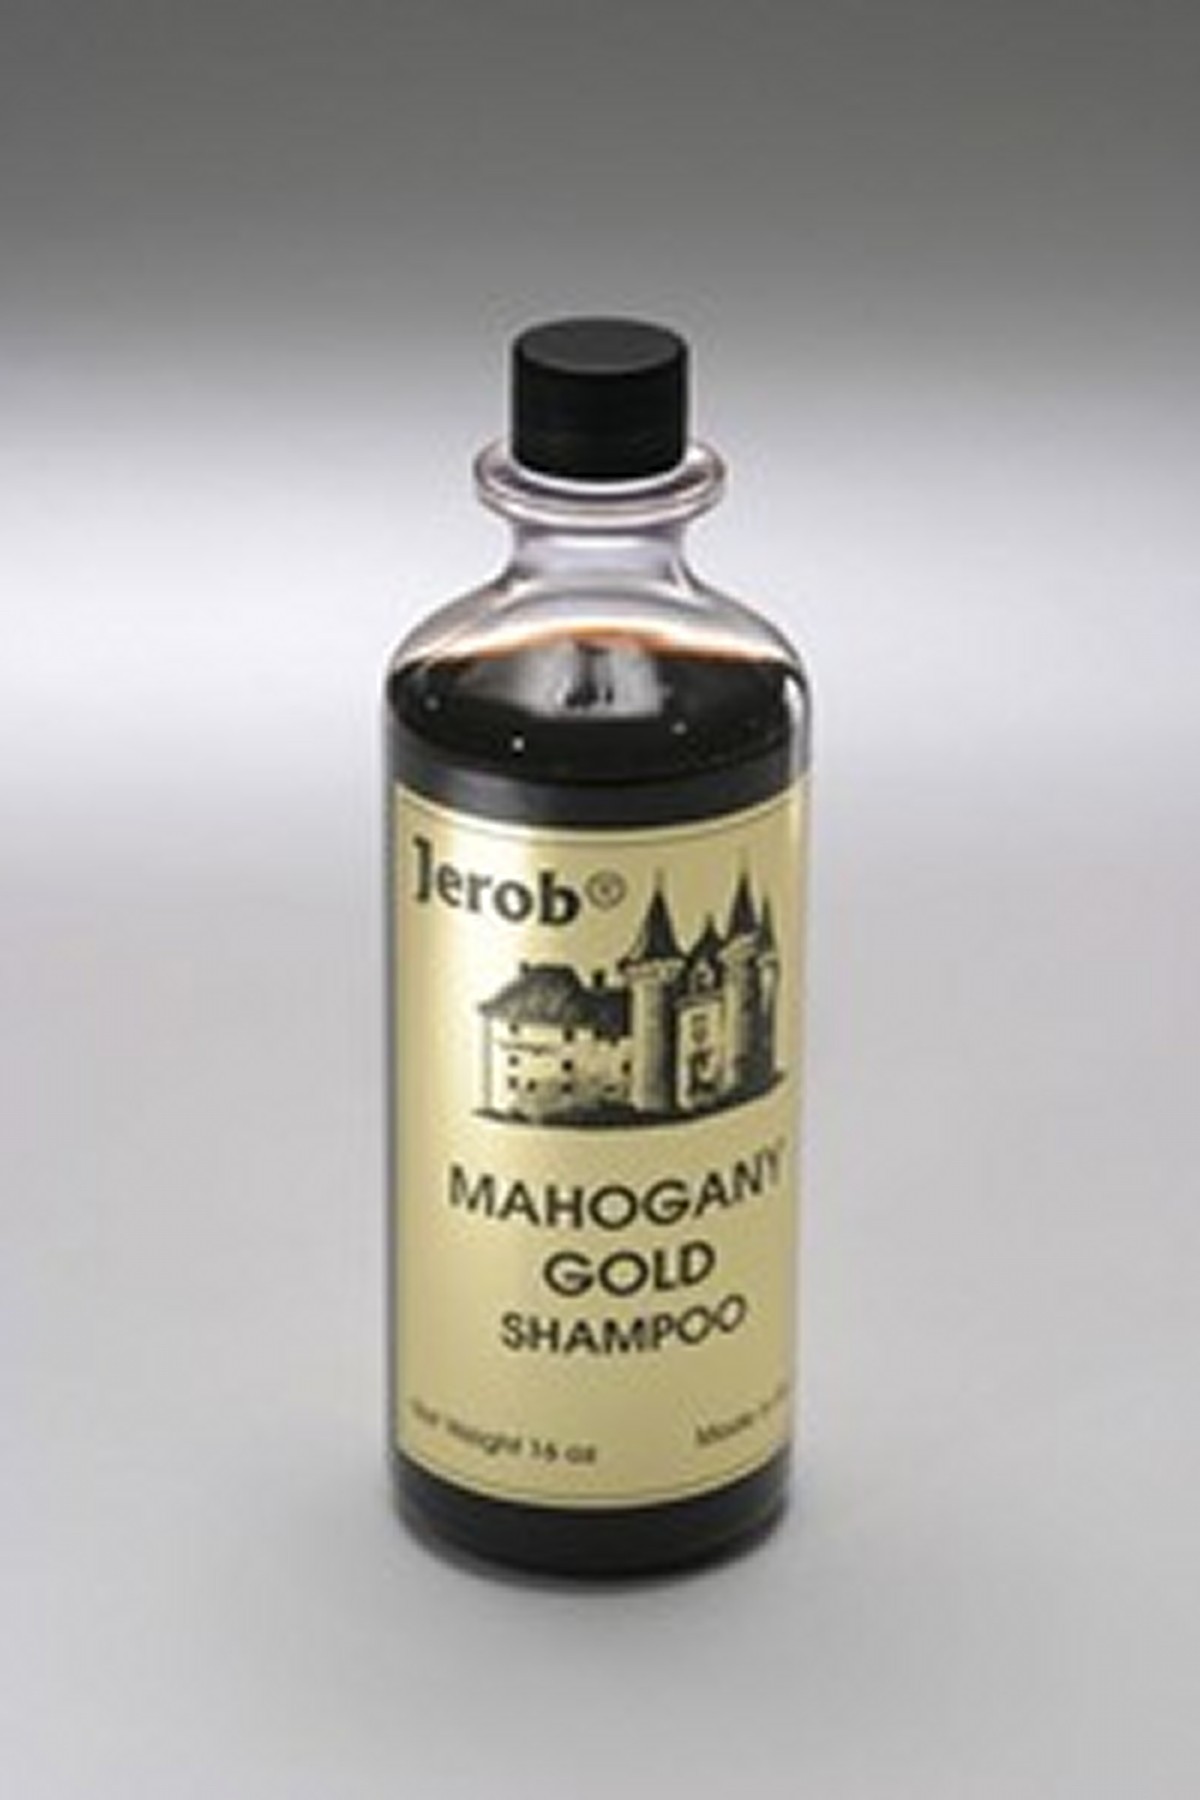 Jerob Shampoo Mahogany Gold 236 ml